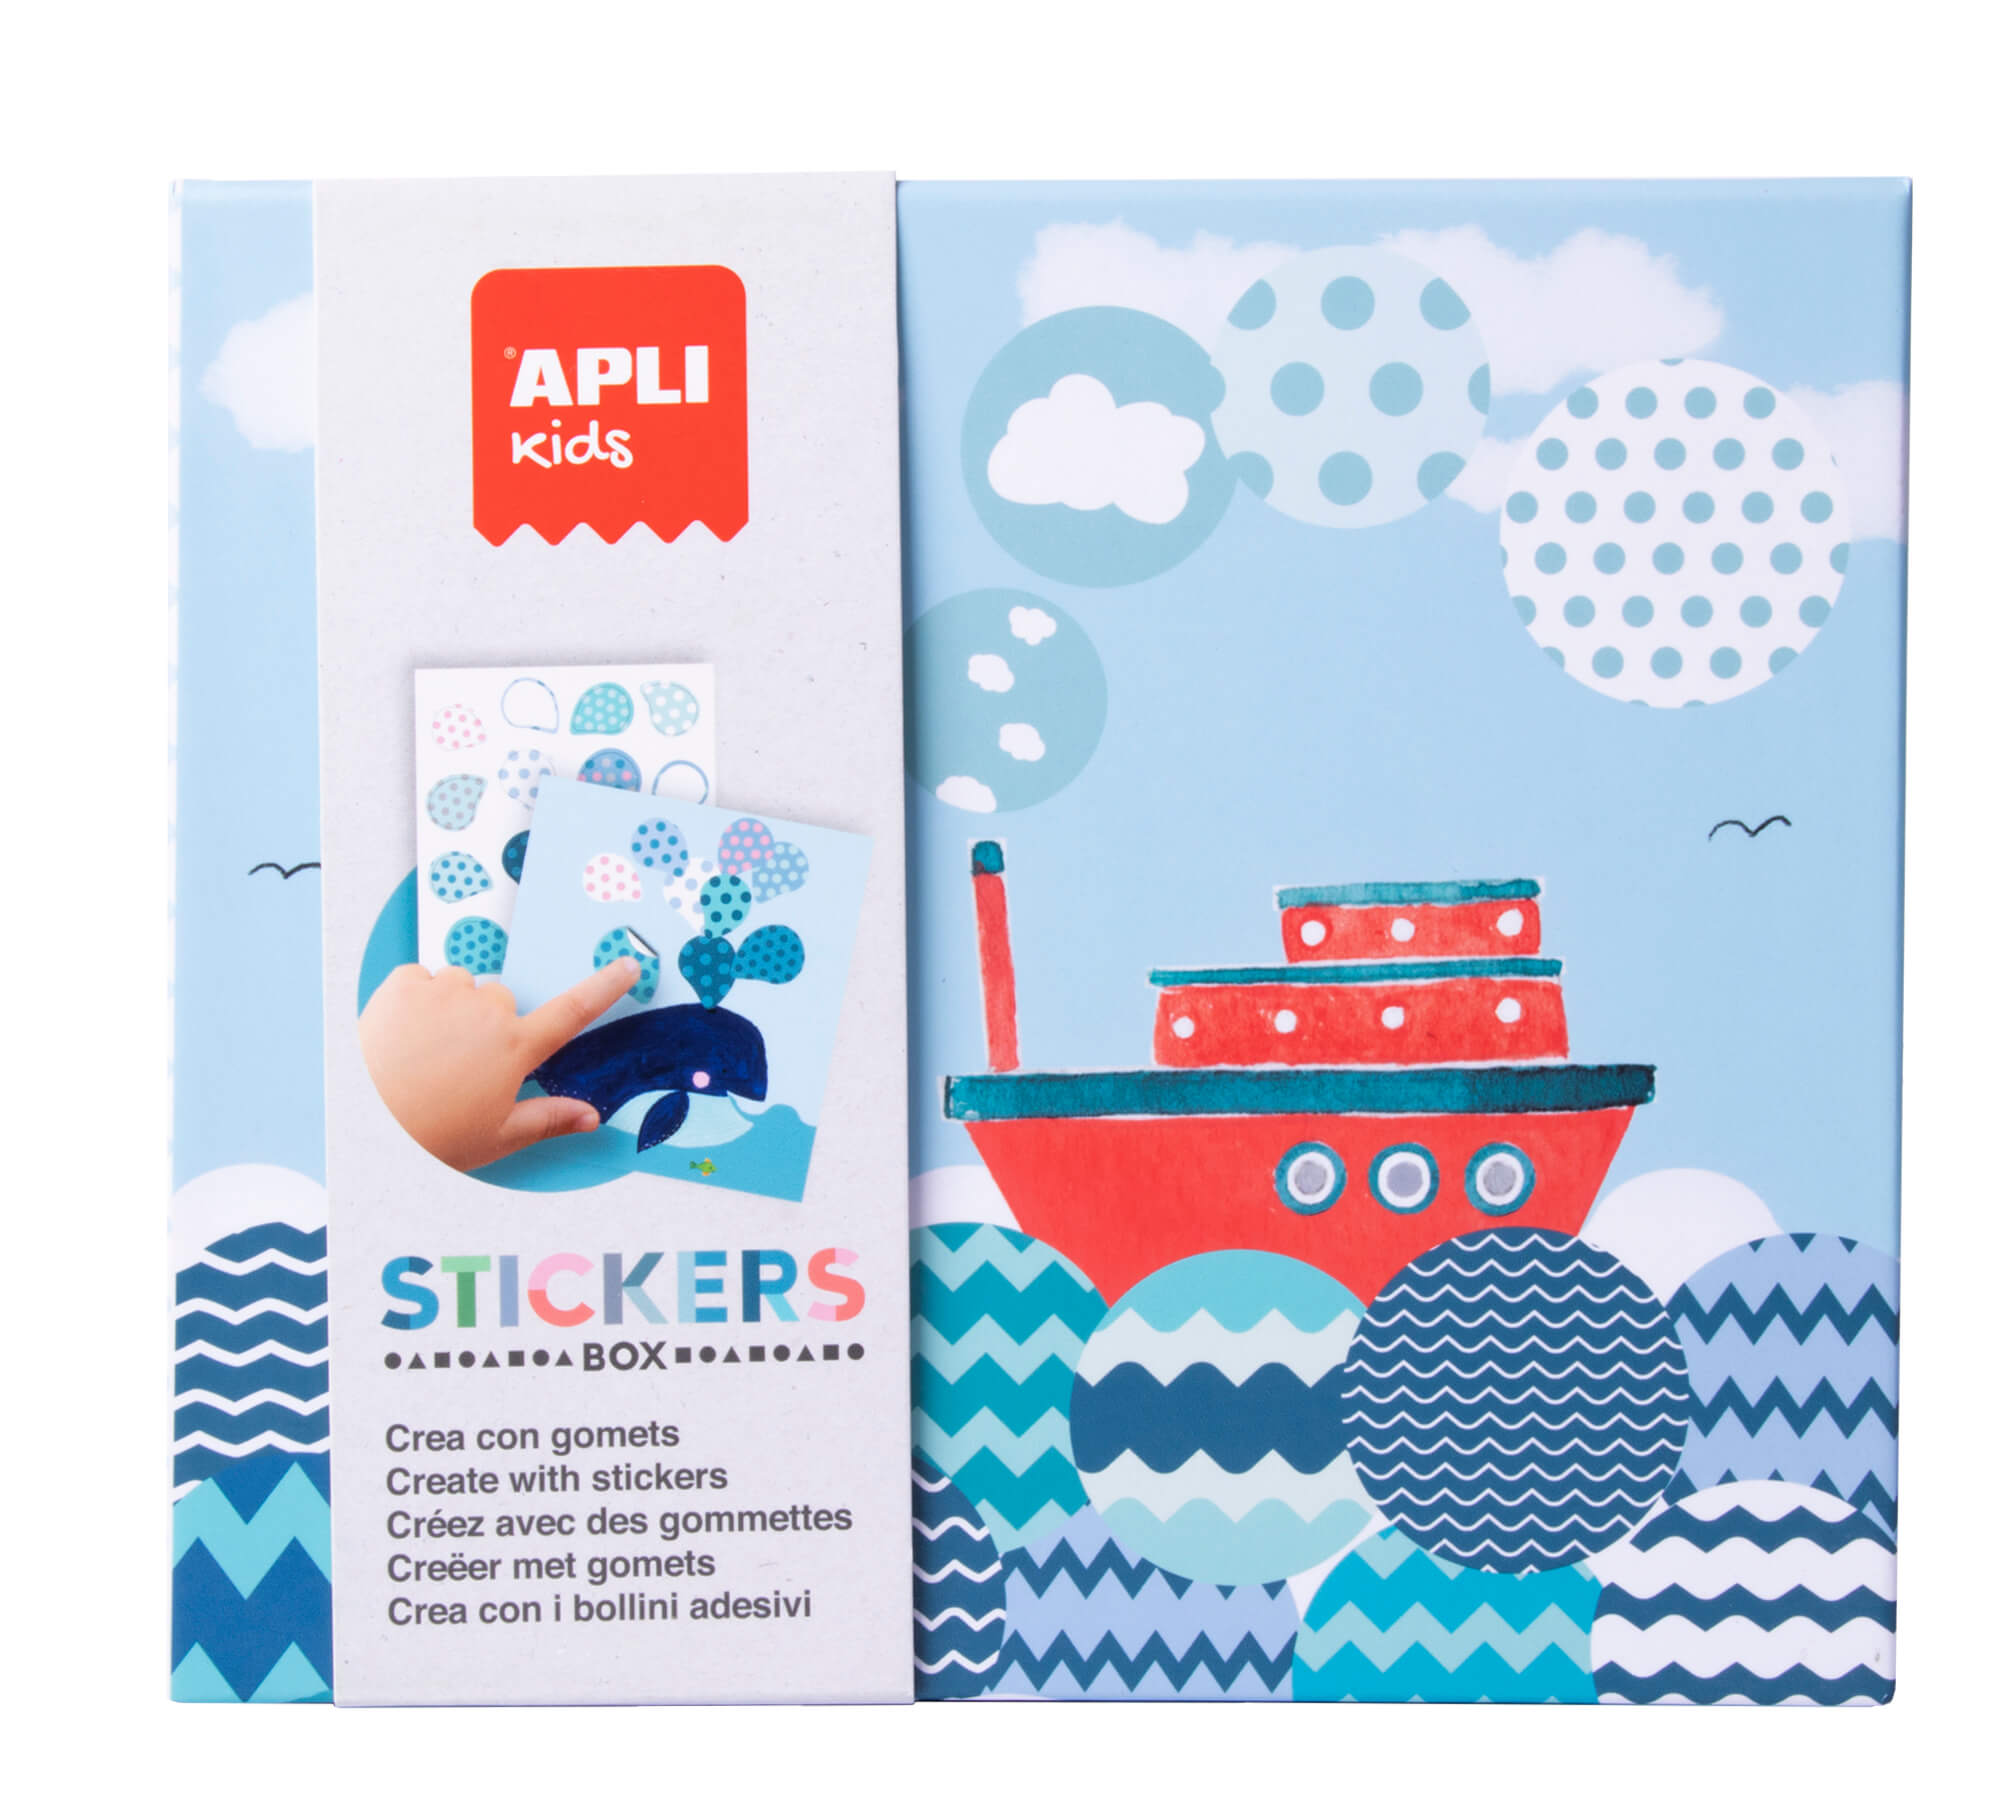 Apli Kids Set de Stickers Bateaux - 8 Feuilles Illustrées de 200G - 8 Feuilles de Stickers Géométriques Amovibles - Guide avec Exemples - Haute Valeur Pédagogique - Boîte Carton au Design Exclusif